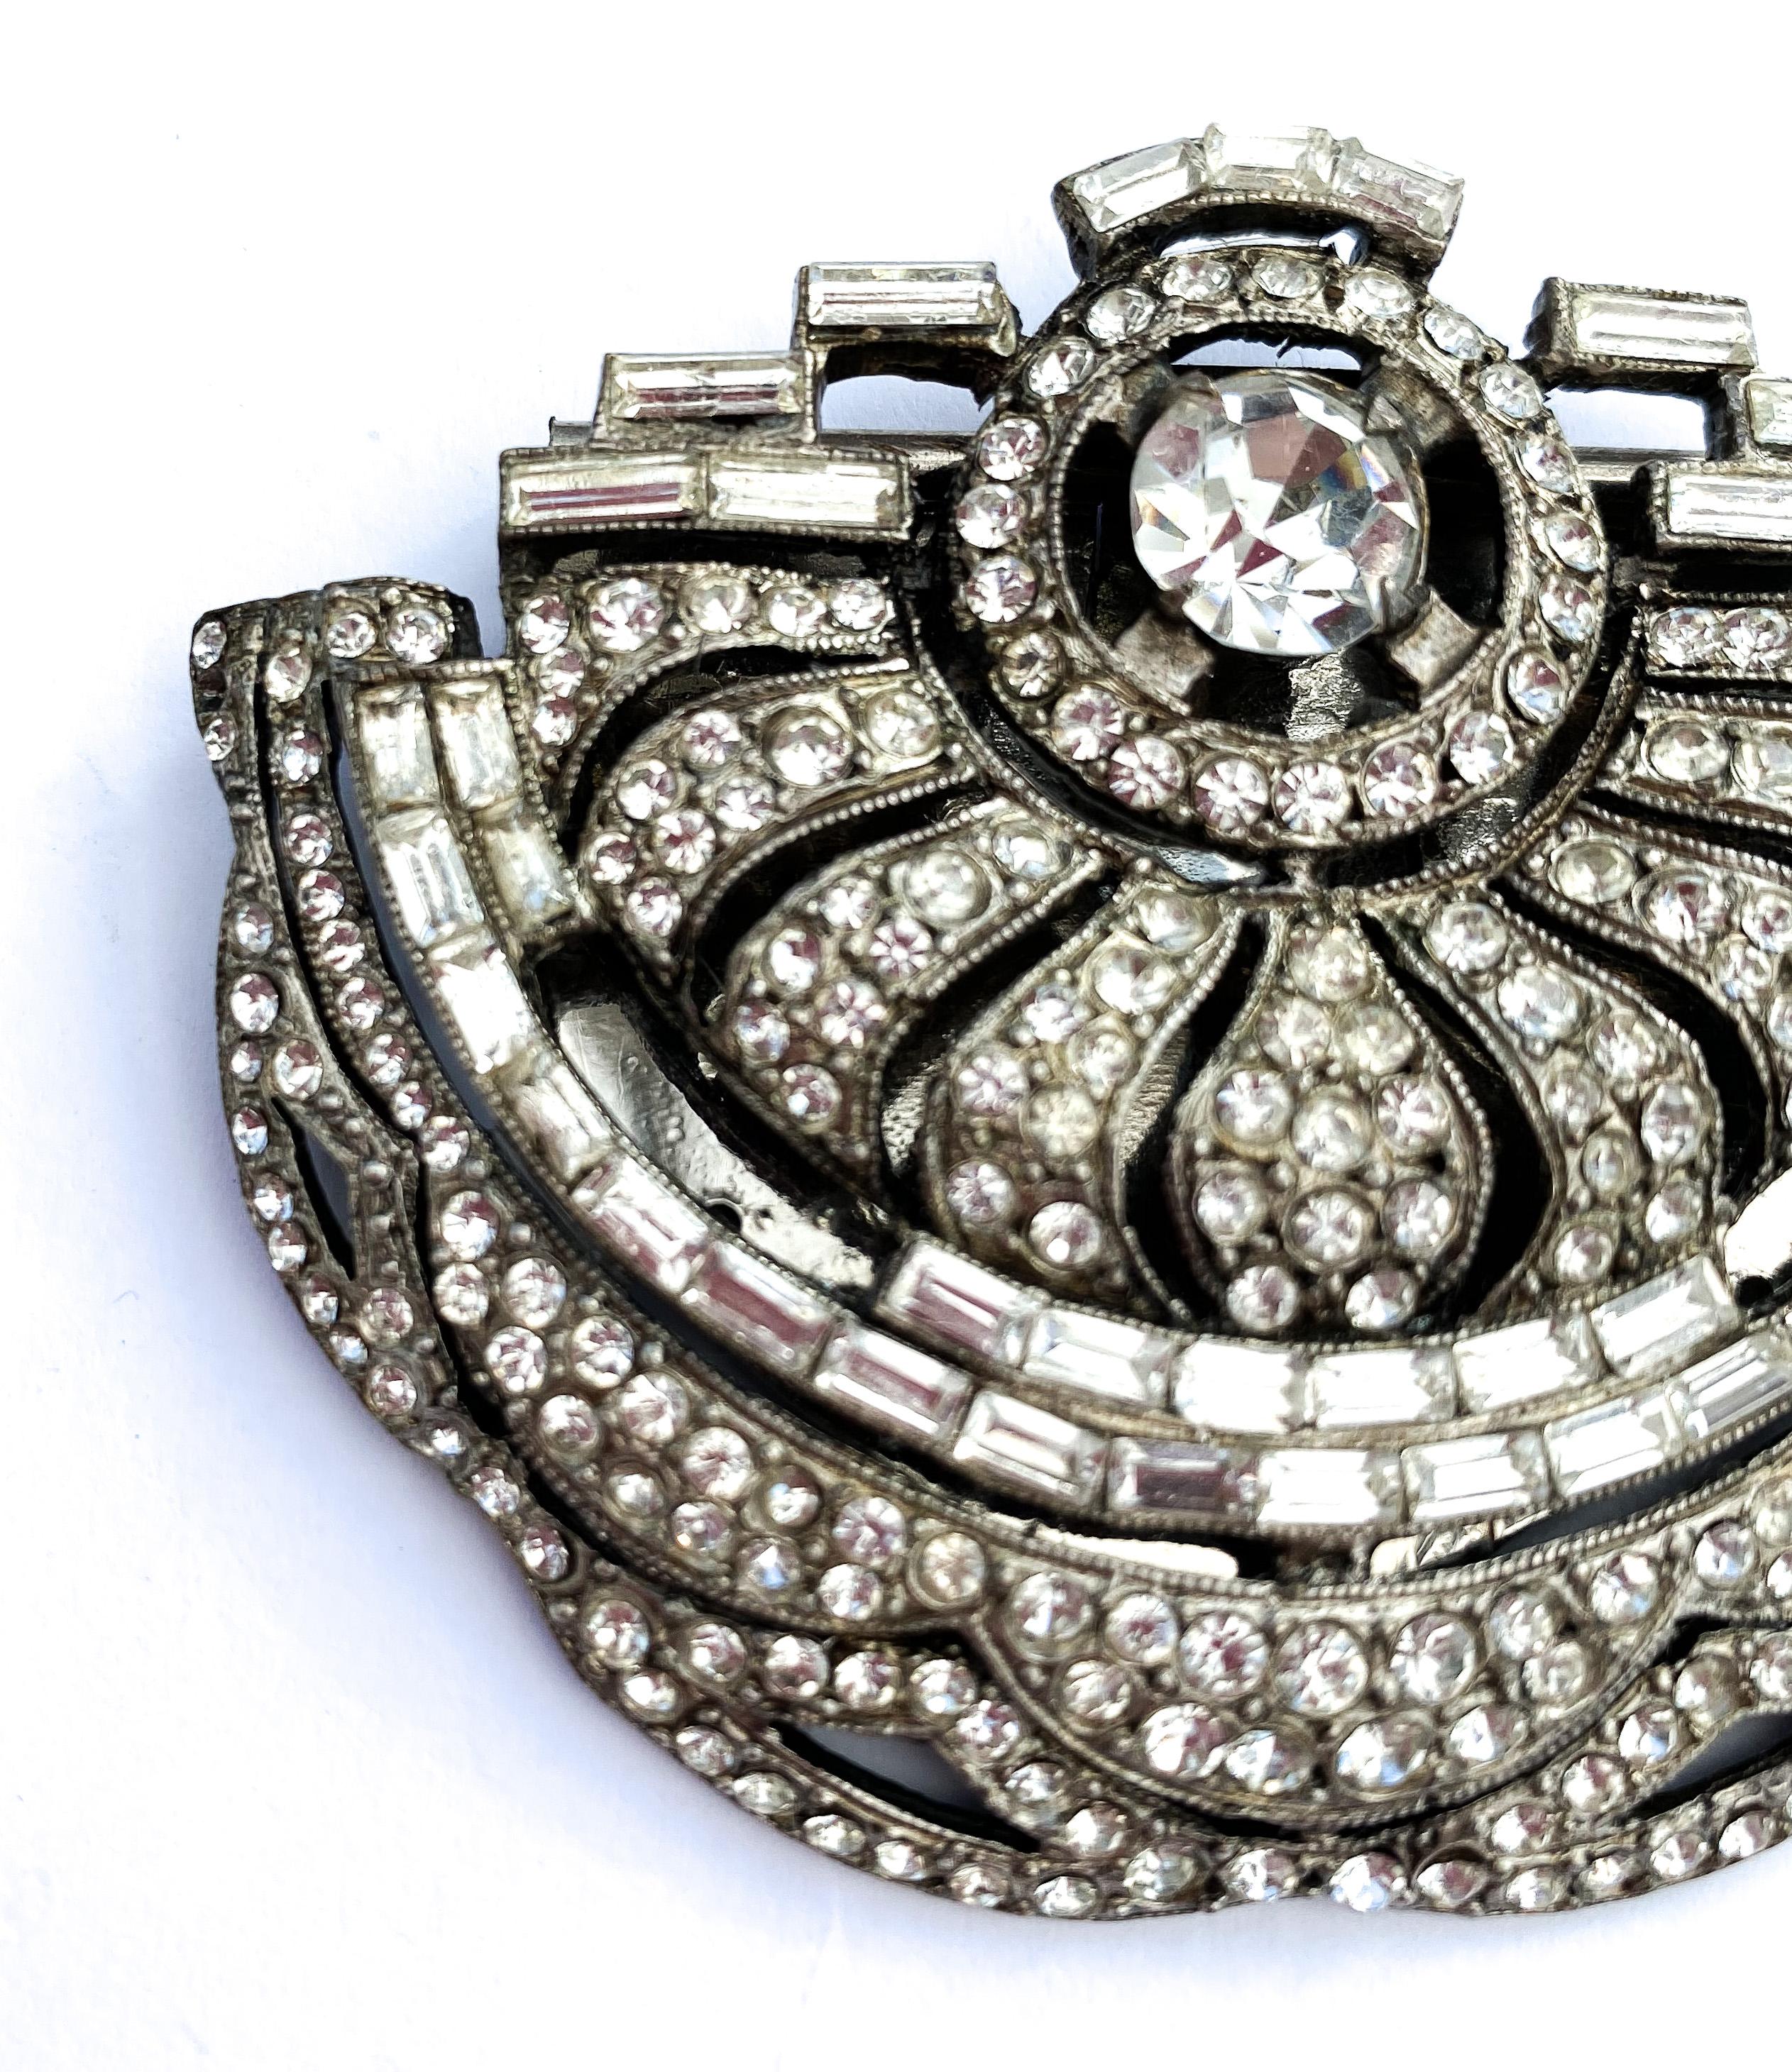 Ein sehr stilvolles Juwel, hohe Art Deco in der Französisch floralem Stil und Herstellung.
Dies ist ein Clip, der an einer Clutch-Tasche, einem Revers oder am Saum eines tief ausgeschnittenen Kleides befestigt werden kann, vorne oder hinten, ein